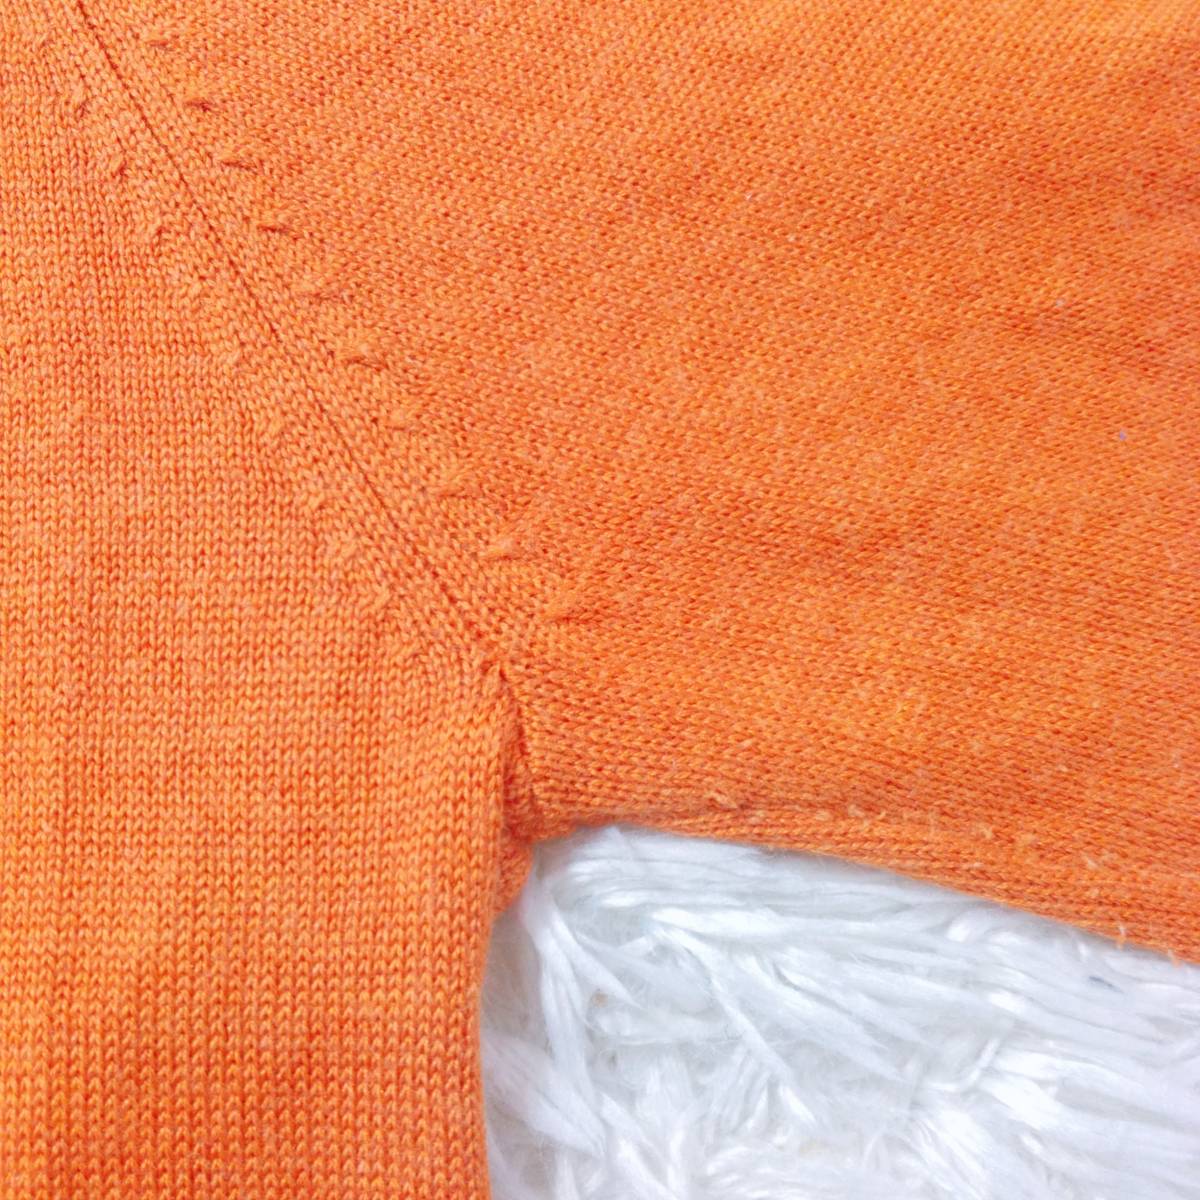 レディースM-L PIU 長袖シャツ オレンジ 橙 ビーズアクセサリー 丸首 絹70% 綿30% カジュアル おしゃれ ピーアイユー 【27015】